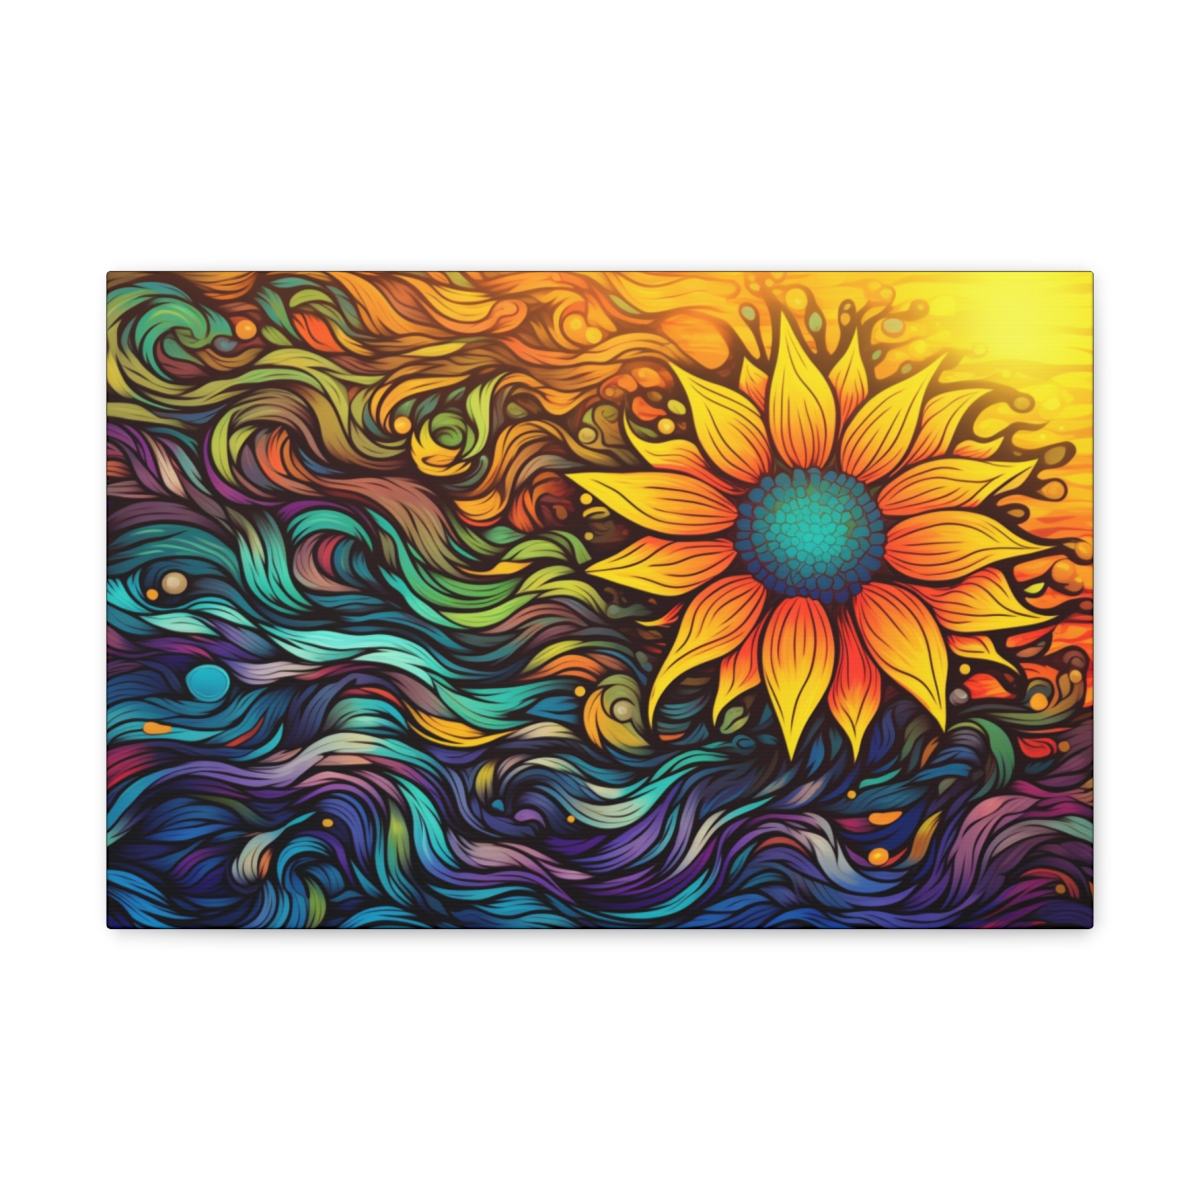 Trippy Hippie Art Canvas Print: Garden Of The Sun